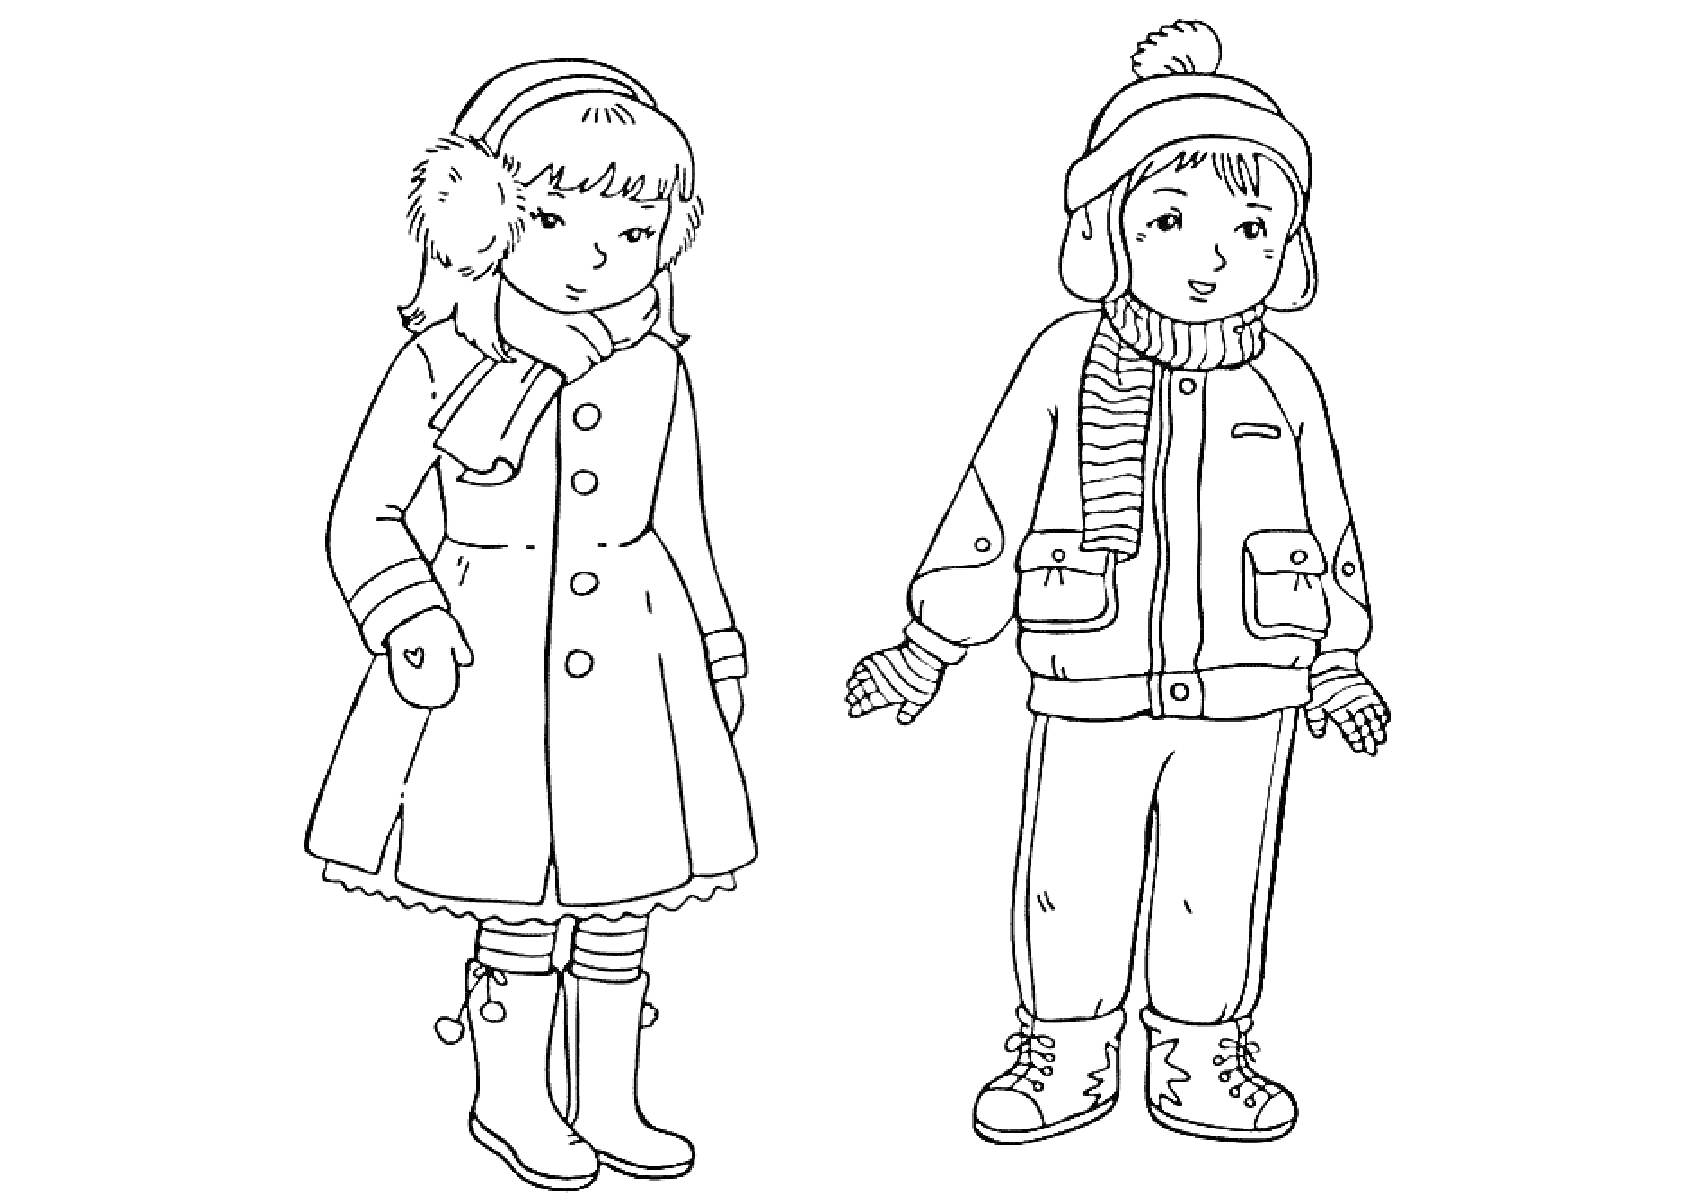 Раскраска Дети в зимней одежде: девочка в пальто, шарфе, варежках, сапогах и наушниках; мальчик в куртке, шапке с помпоном, шарфе, брюках, варежках и ботинках